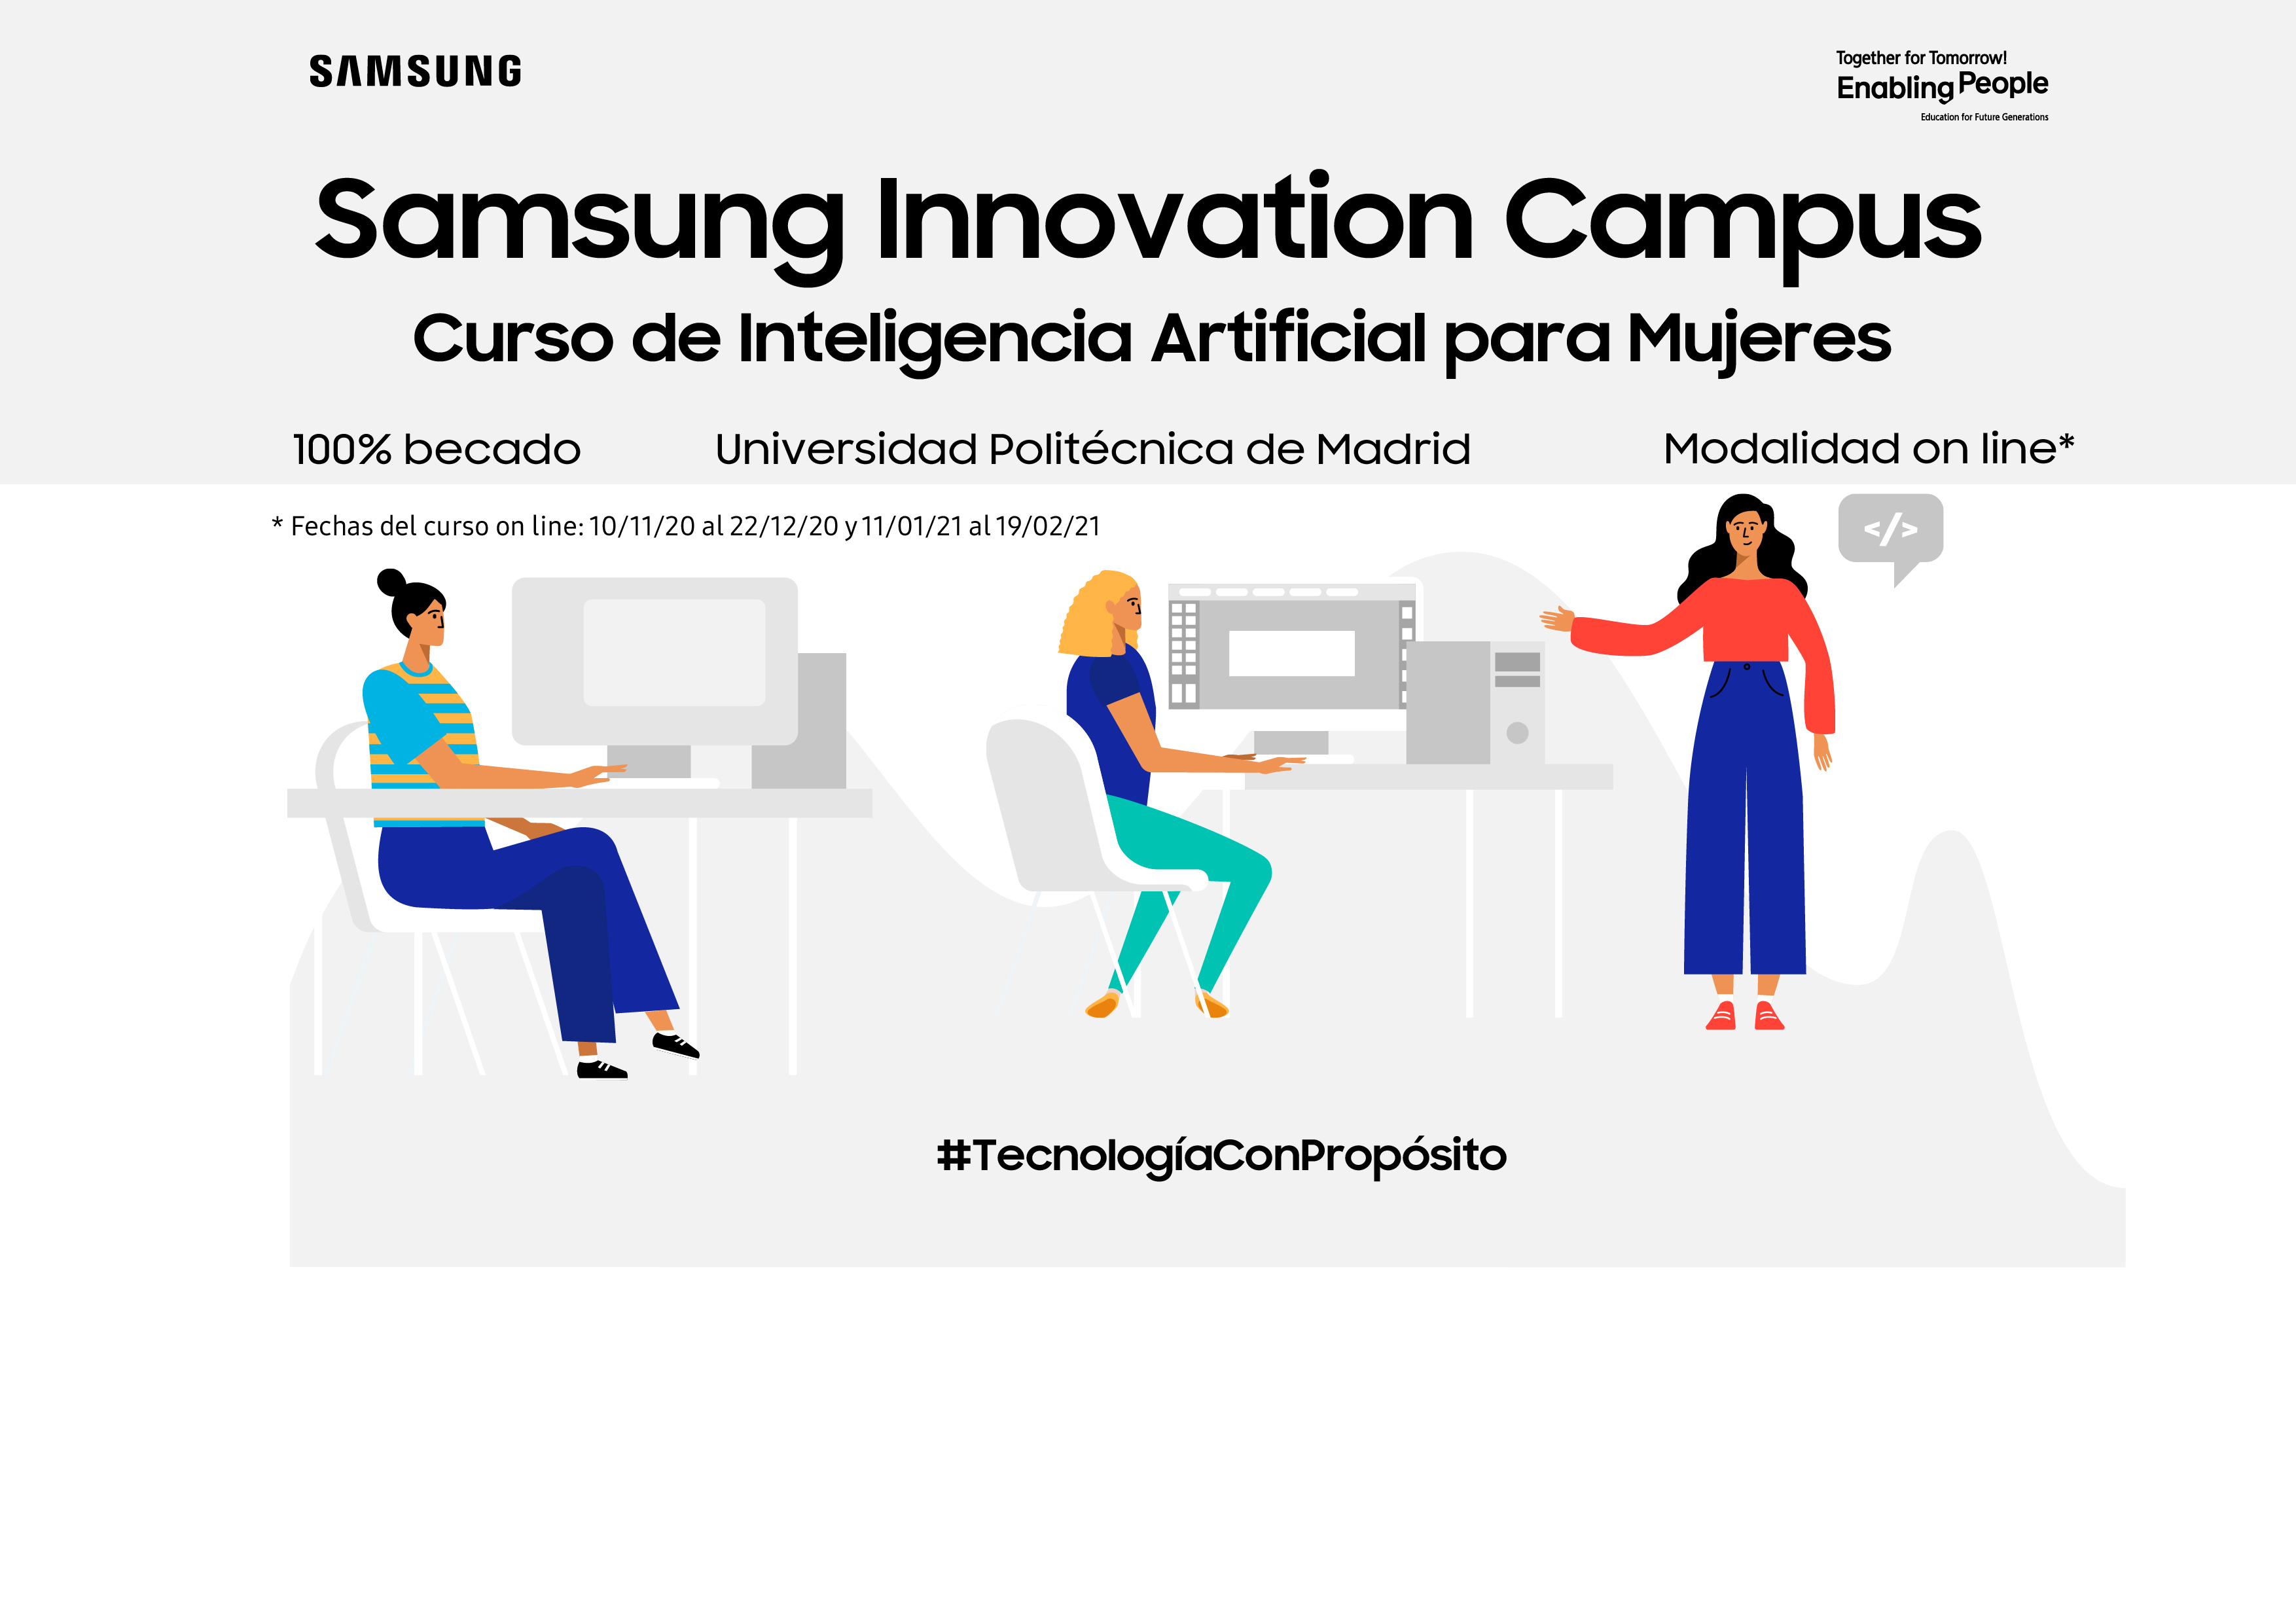 Samsung Innovation Campus lanza un curso de Inteligencia Artificial para DesArrolladoras con la UPM, ¿te apuntas?